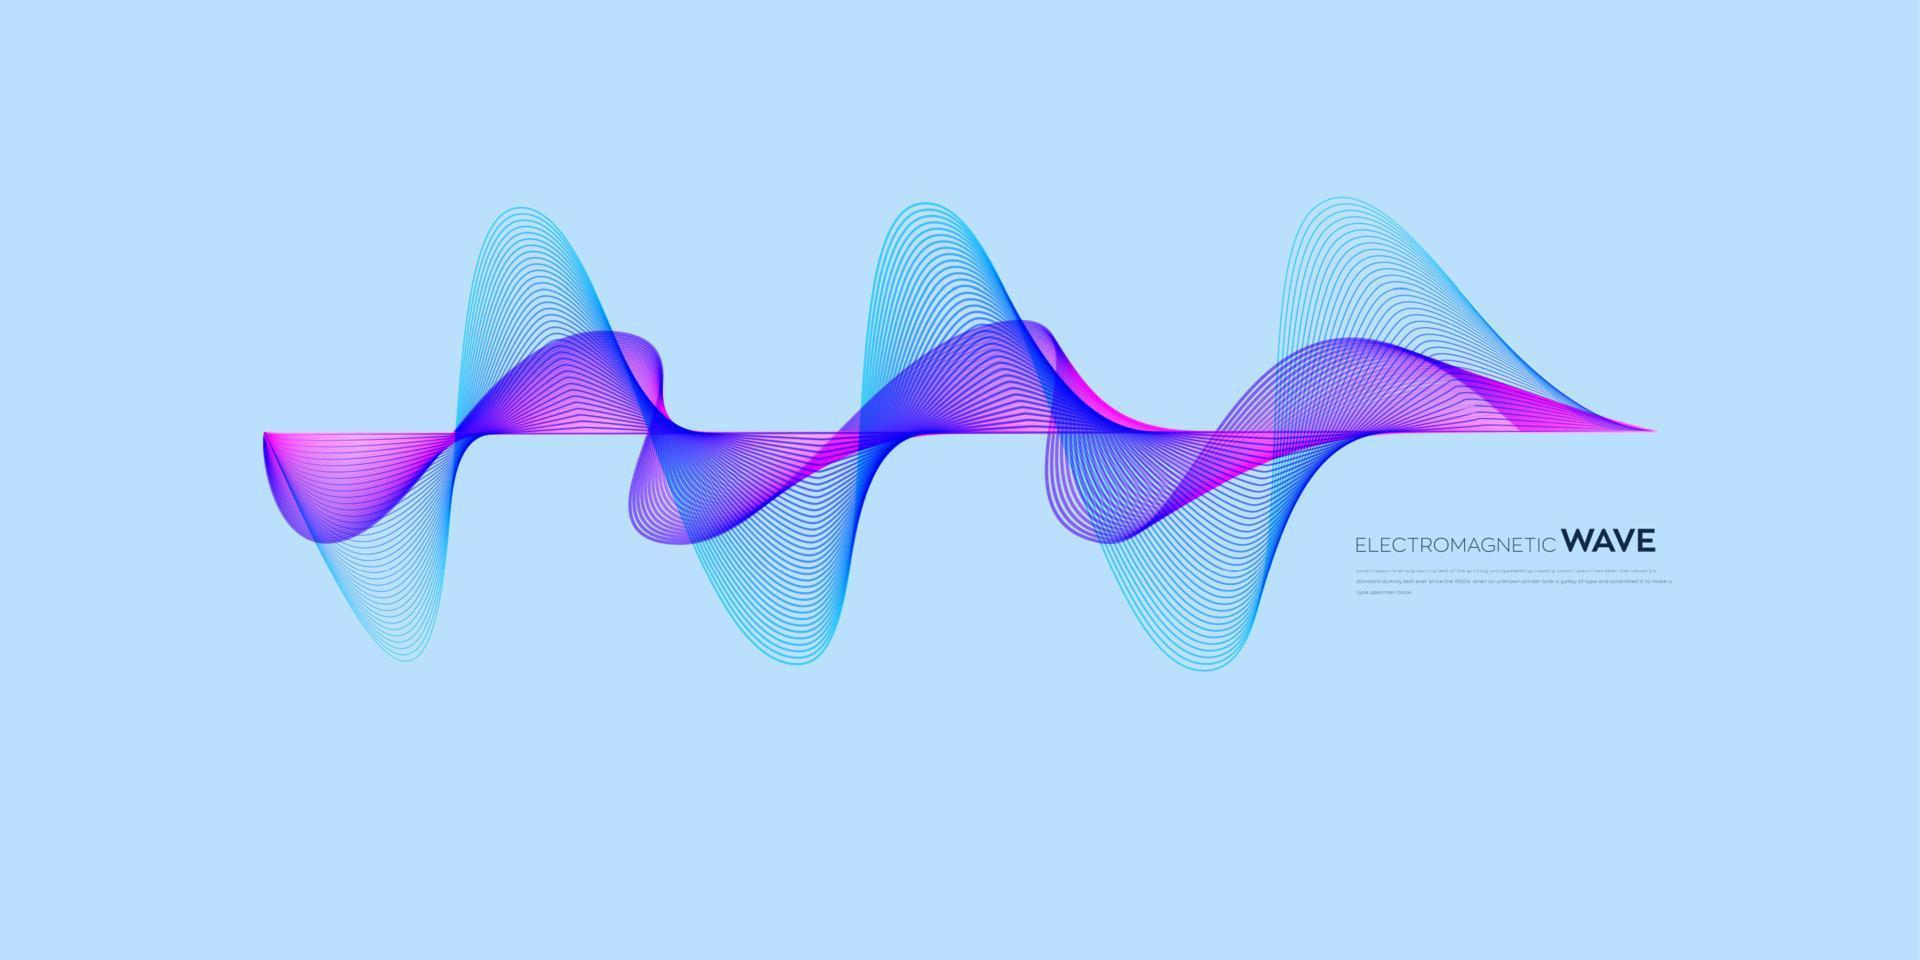 élément vectoriel d'onde électromagnétique avec fond de lignes bleues abstraites dans le concept de technologie, science, réseau numérique.